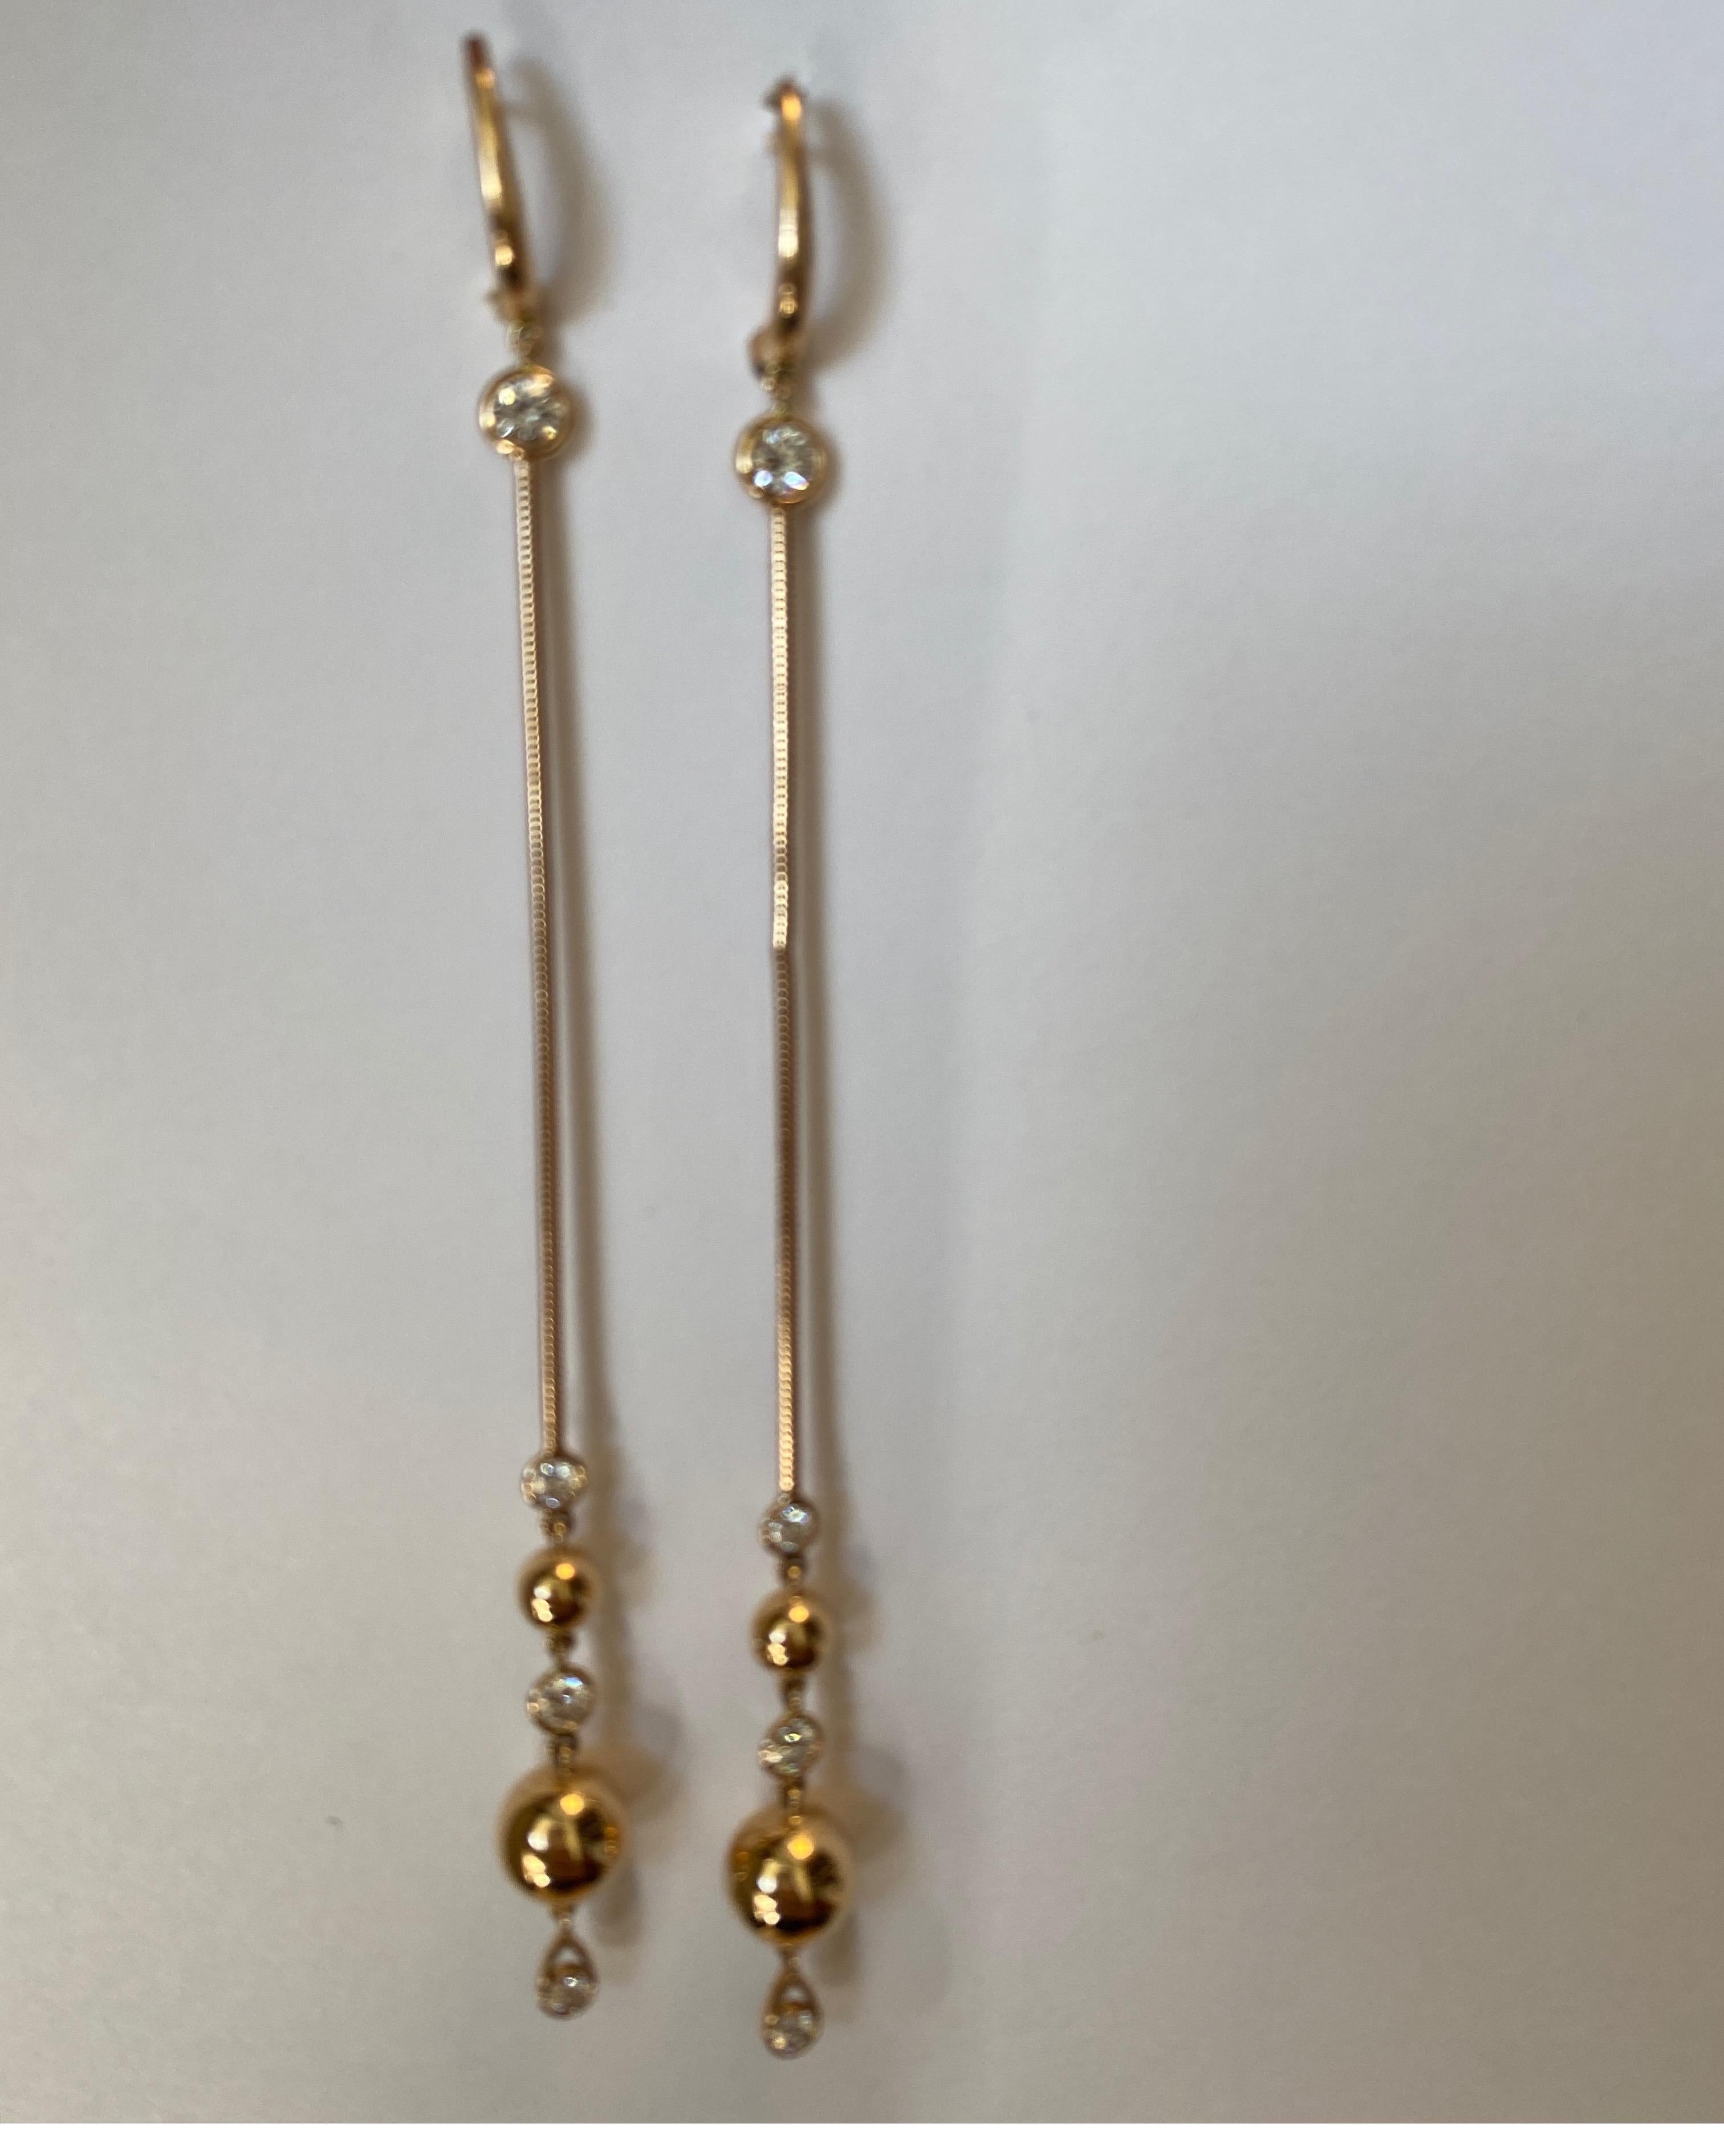 lange, tropfenförmige Diamantohrringe aus 18 Karat Roségold, besetzt mit 8 runden Diamanten im Vollschliff mit einem Gewicht von 0,82 Karat, von Crivelli.
Einzelhandel $4750